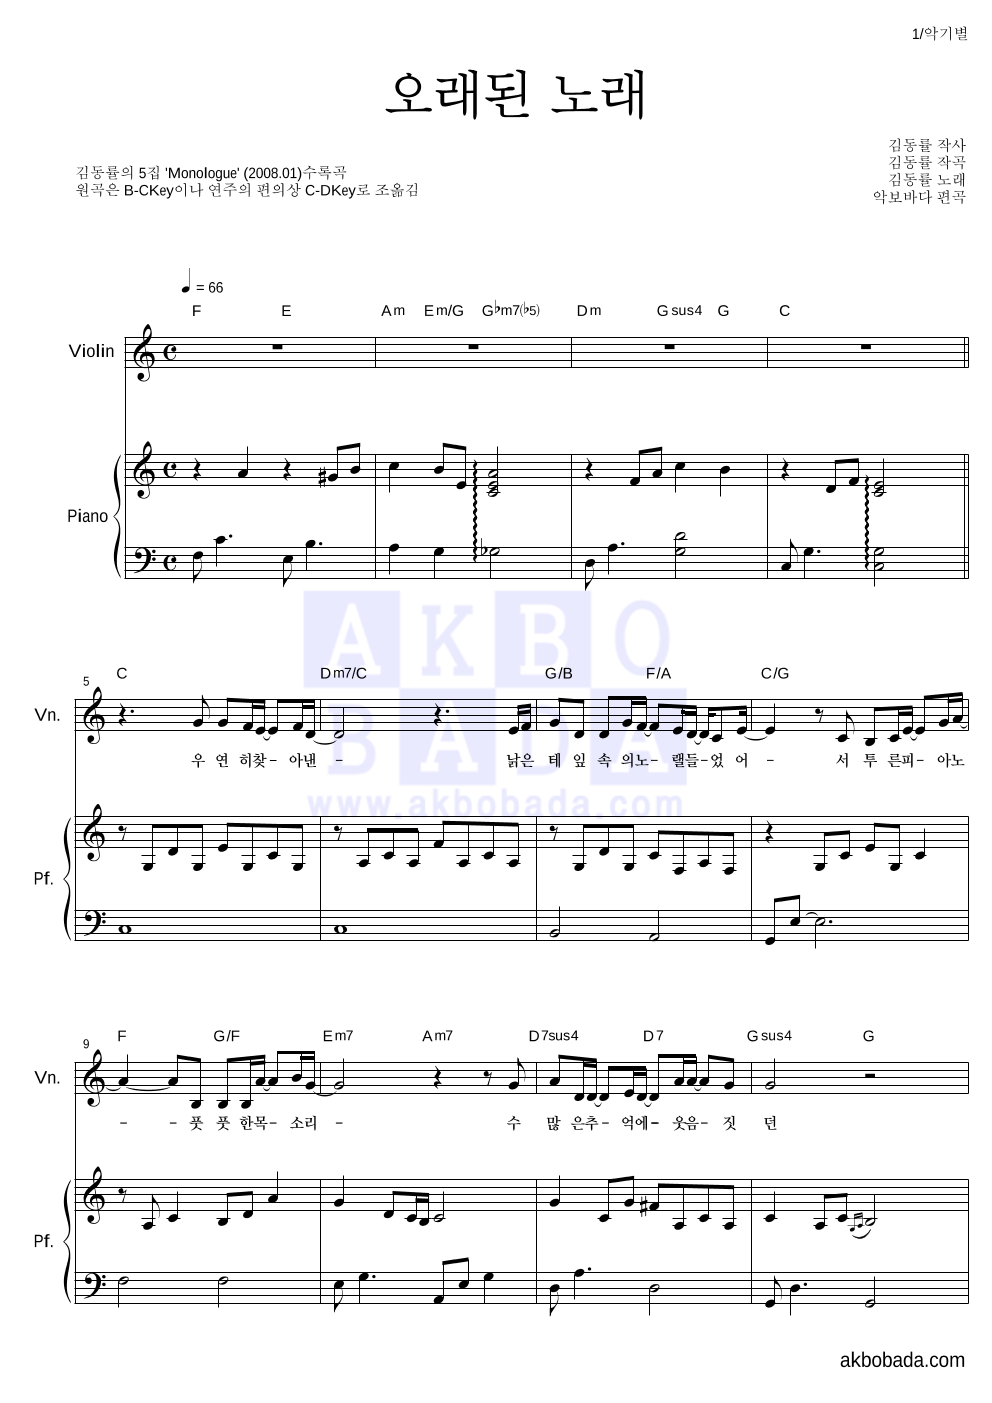 김동률 - 오래된 노래 바이올린&피아노 악보 